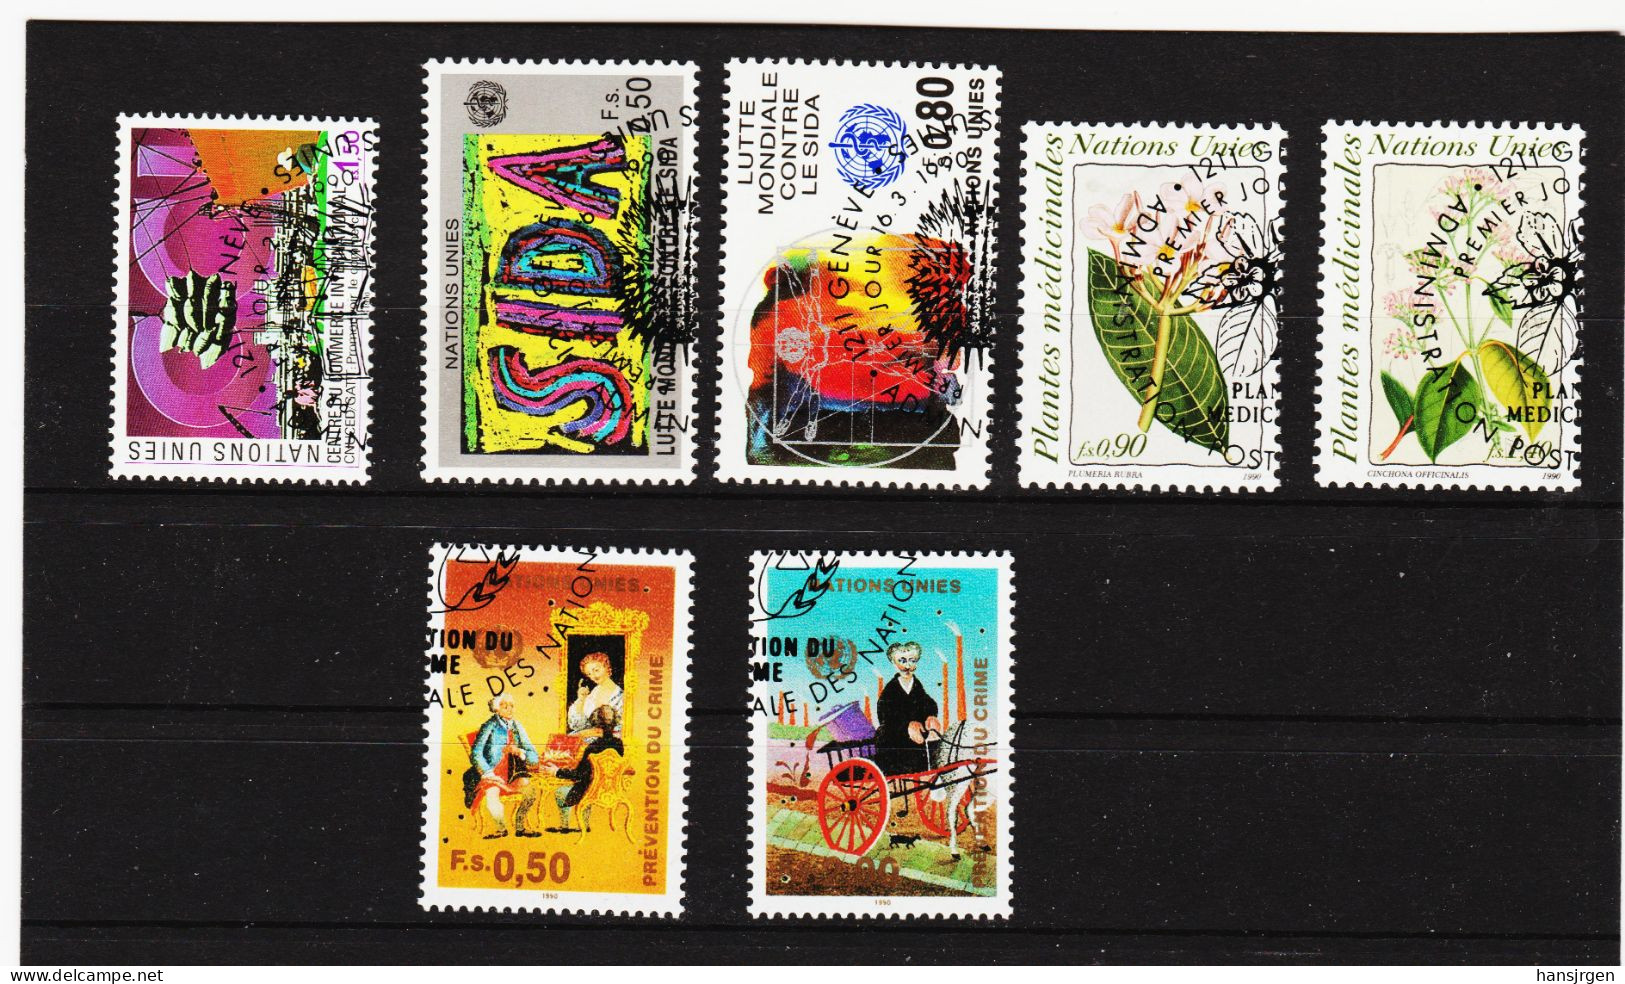 IMO363 VEREINTE NATIONEN UNO GENF 1990 MICHL 182 + 184/87 + 190/91  Gestempelt SIEHE ABBILDUNG - Used Stamps